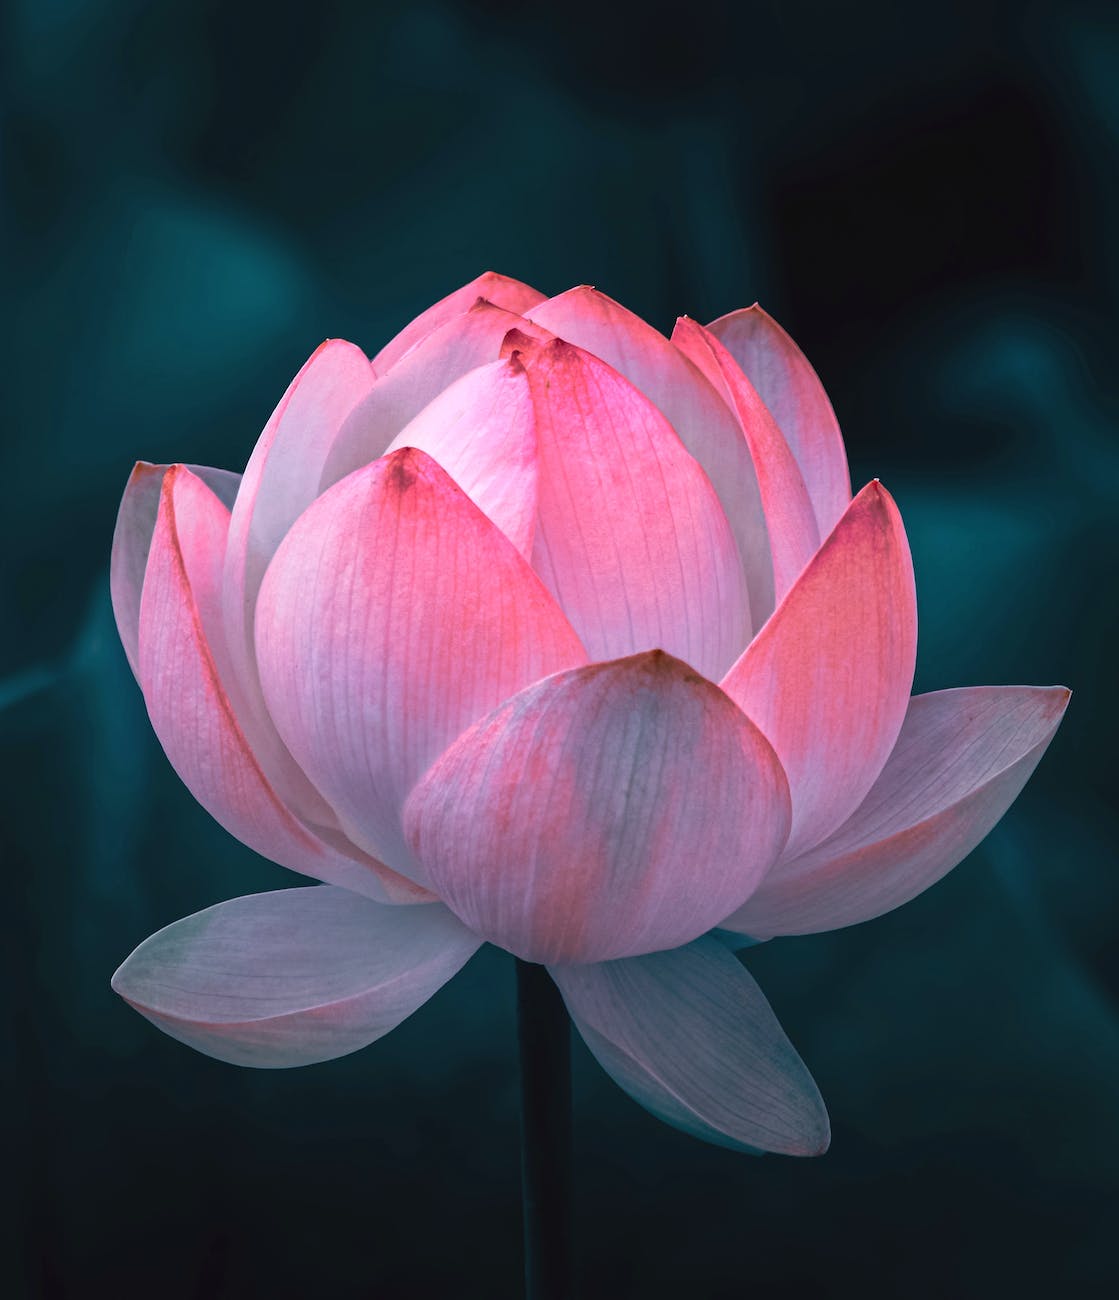 a beautiful lotus flower in bloom